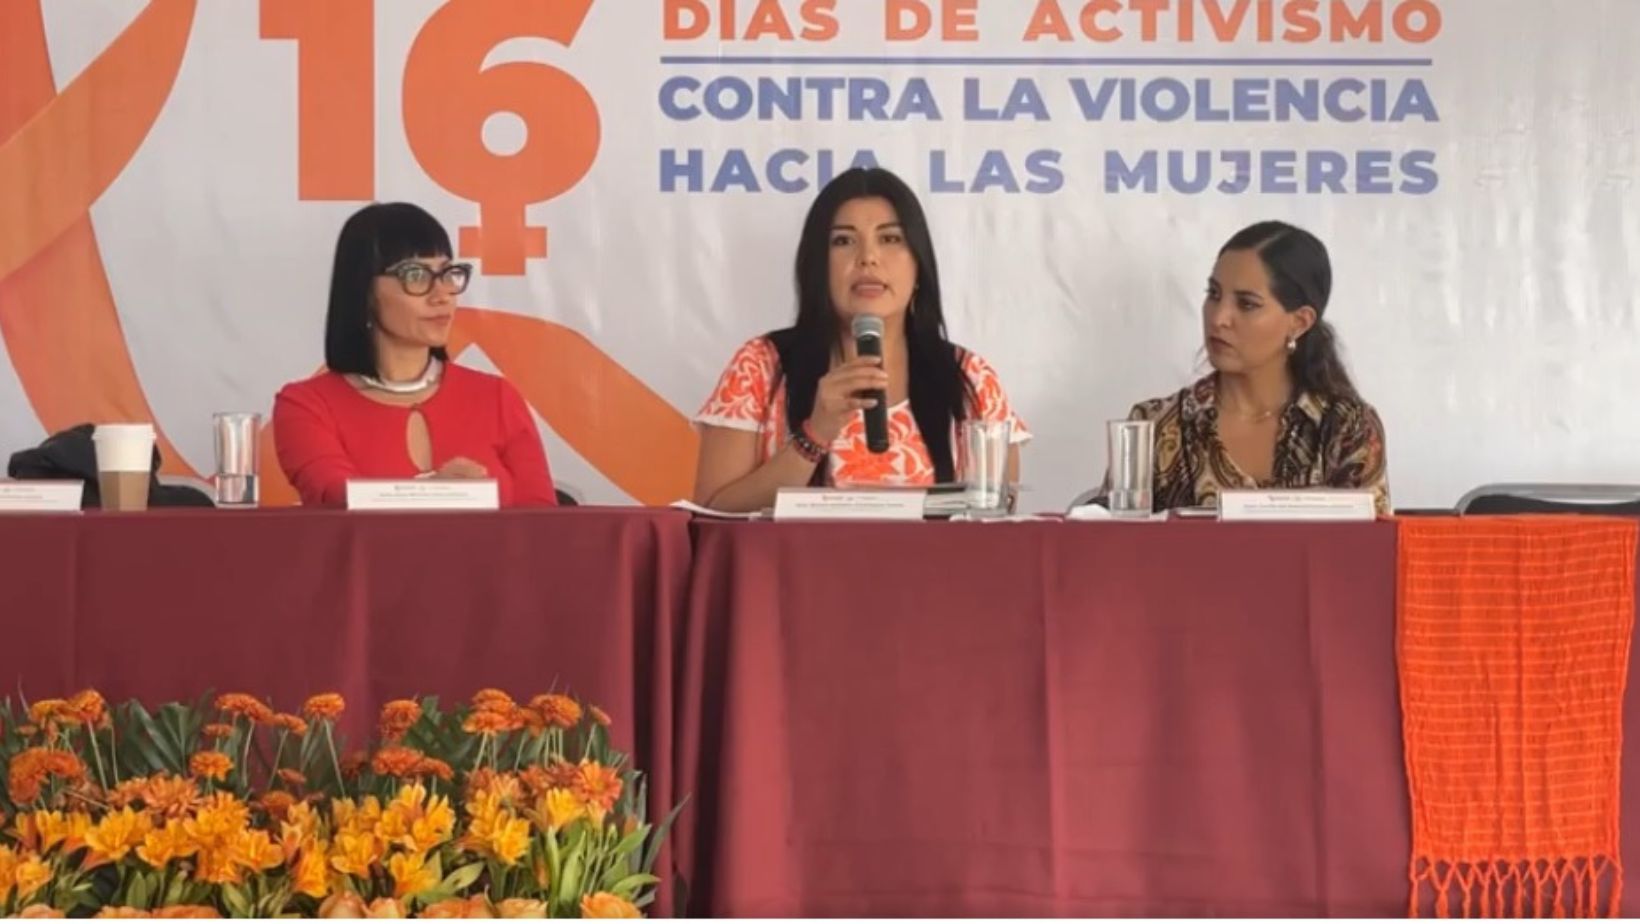 Brenda Elizabeth Domínguez Enciso, directora de directora del Instituto Municipal de la Mujer dijo haber vivido minutos angustiantes durante el ataque.
(Captura de pantalla Facebook Brenda Elizabeth)